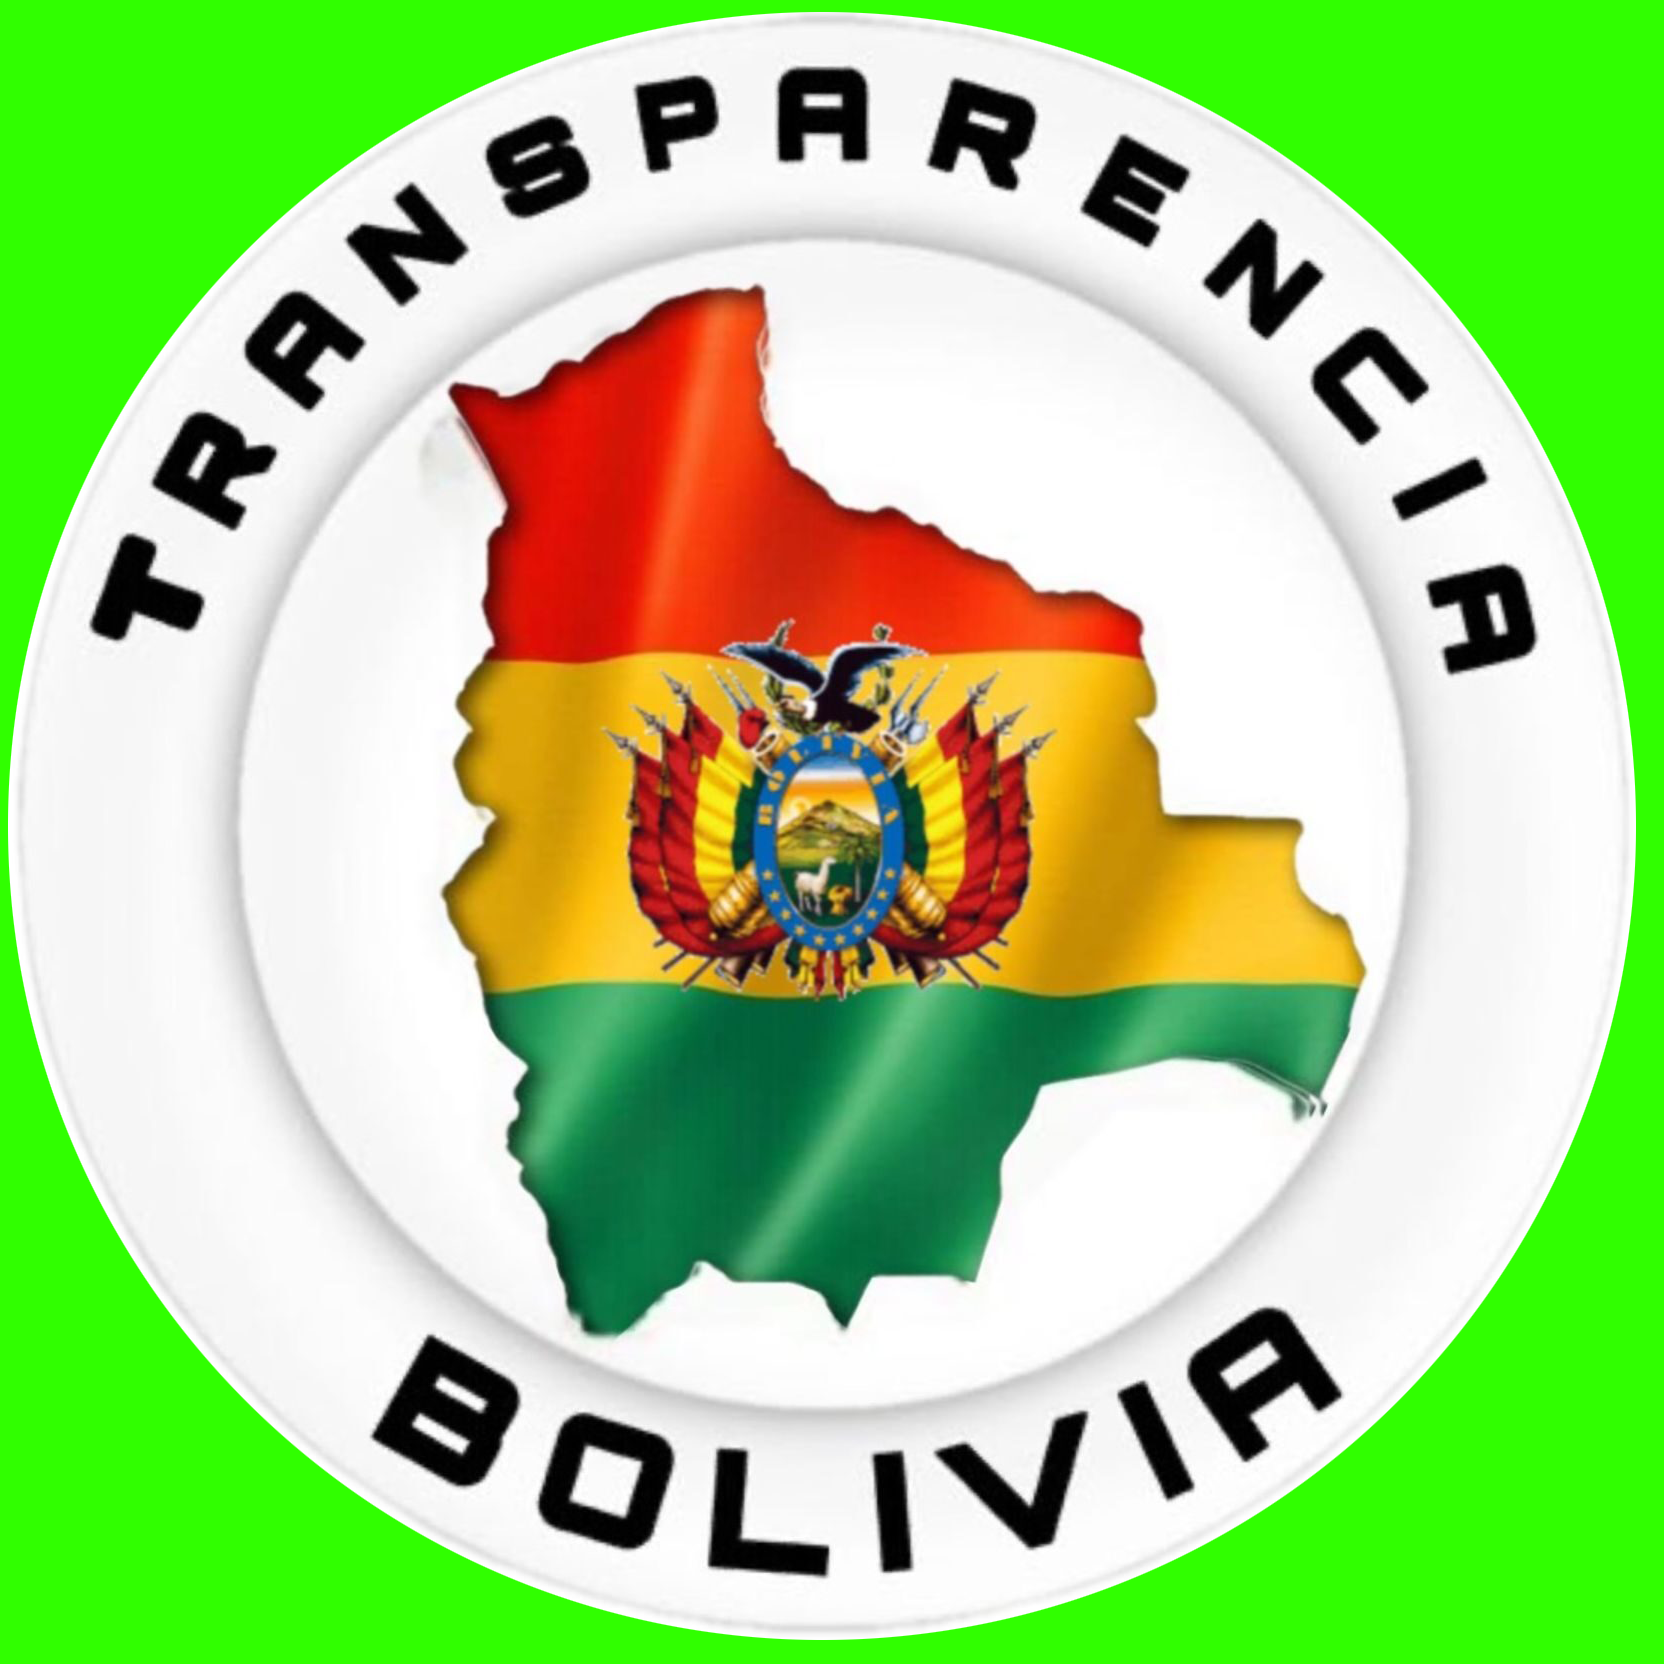 Transparencia Bolivia - Organización civil de ciudadanos que luchan contra la corrupción política e institucional por una Bolivia transparente.